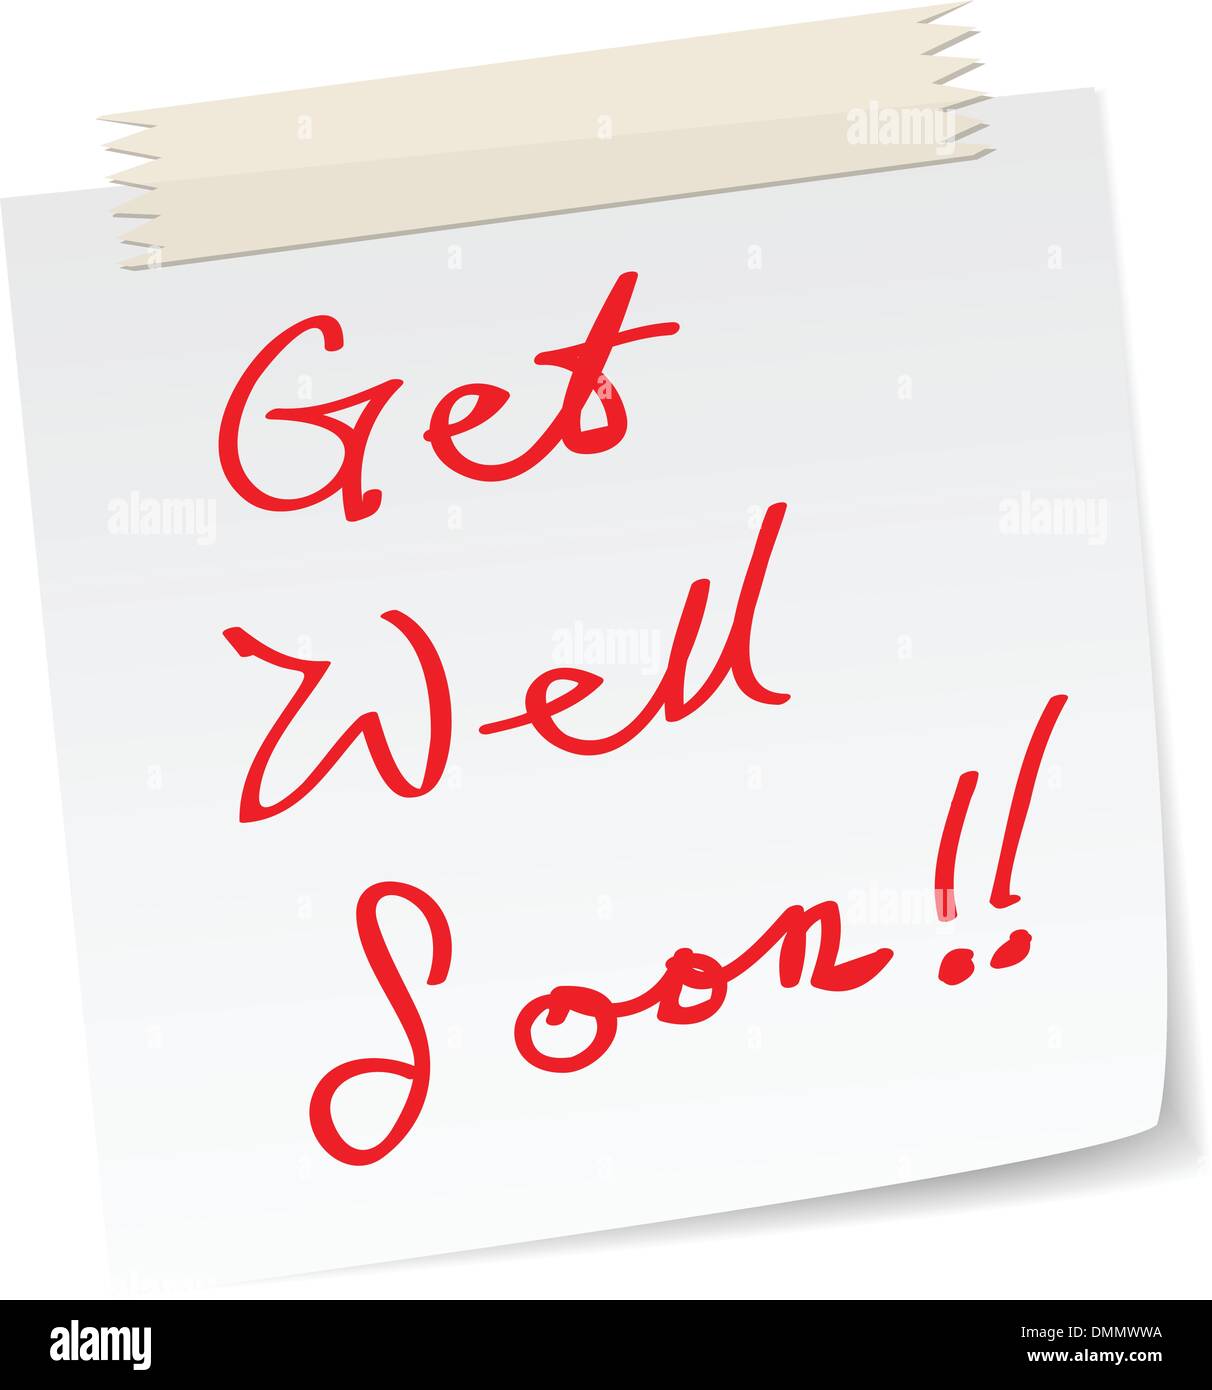 get well soon message Stock Vector